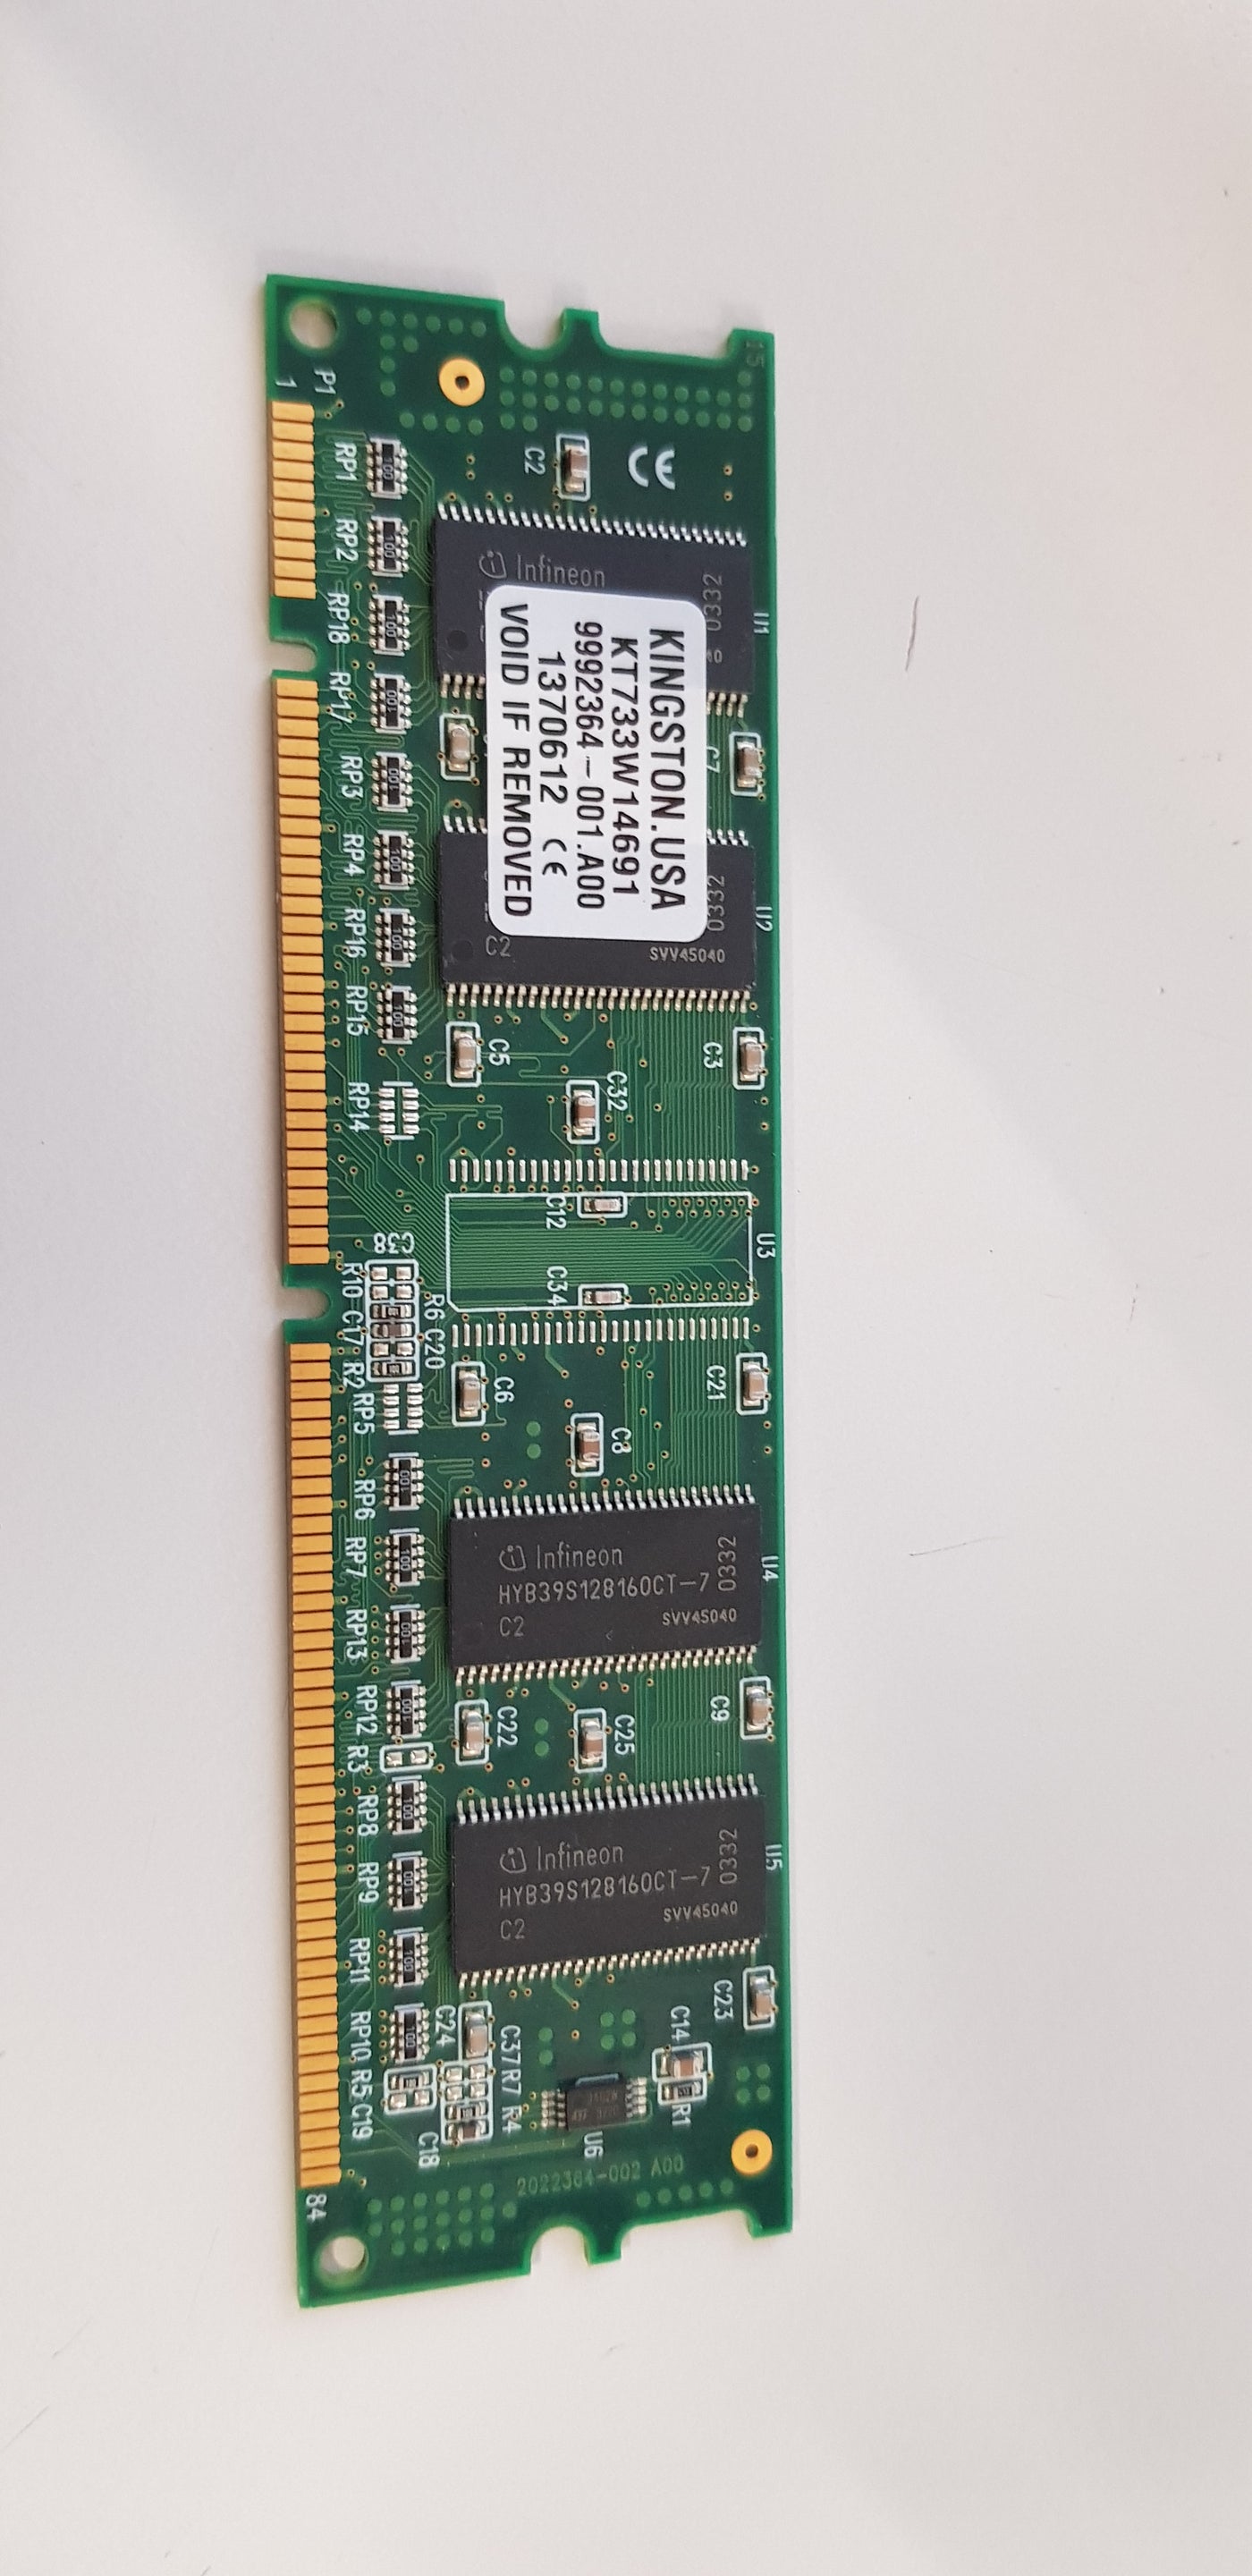 Kingston 64MB PC133 133MHz non-ECC Unbuffered 168-Pin DIMM Memory Module (KT733W14691 / 9992364-001.A00)